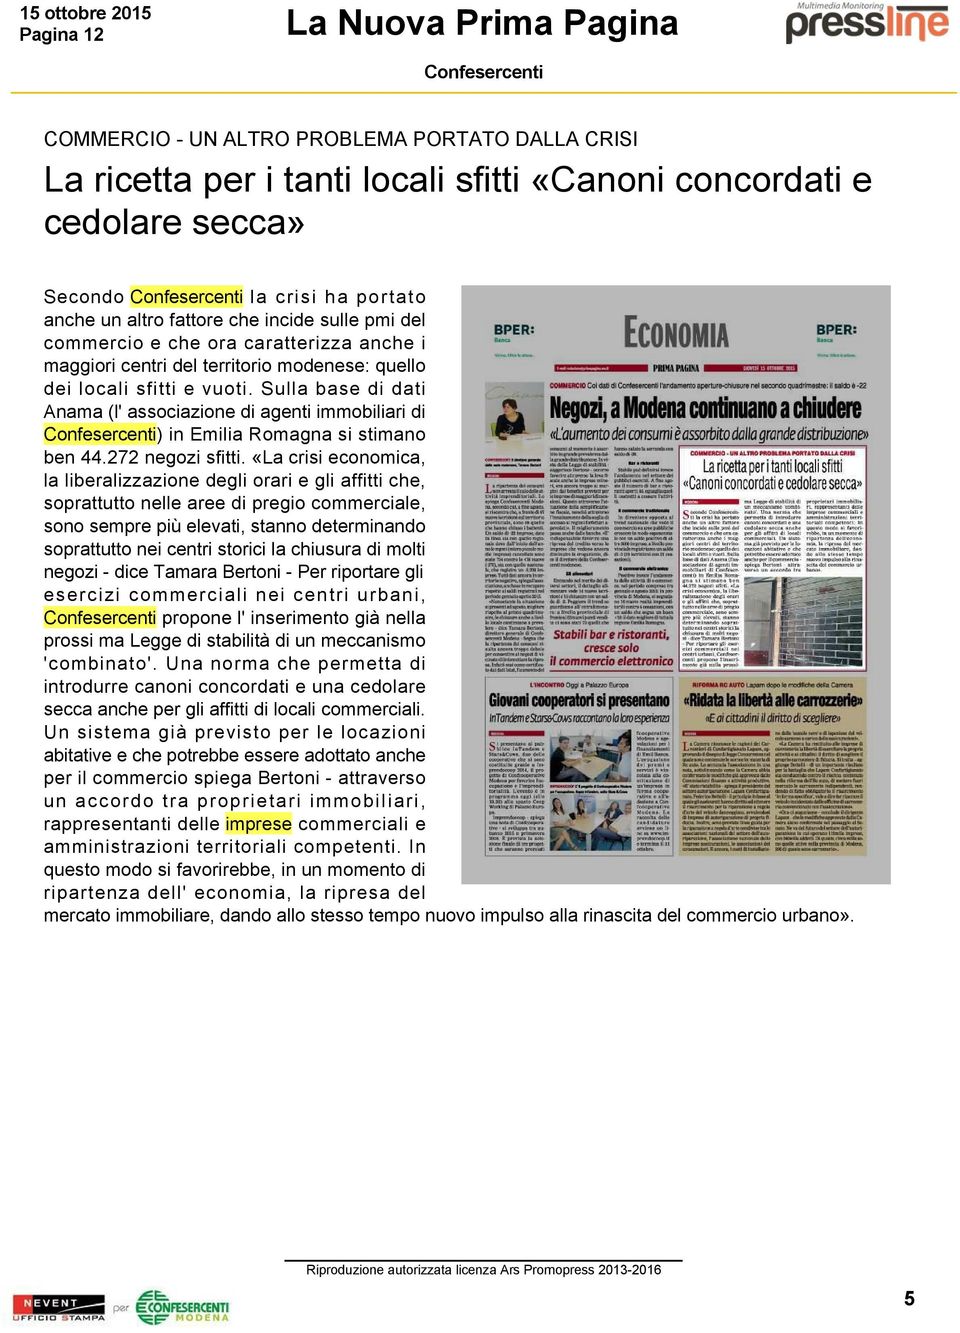 Sulla base di dati Anama (l' associazione di agenti immobiliari di ) in Emilia Romagna si stimano ben 44.272 negozi sfitti.